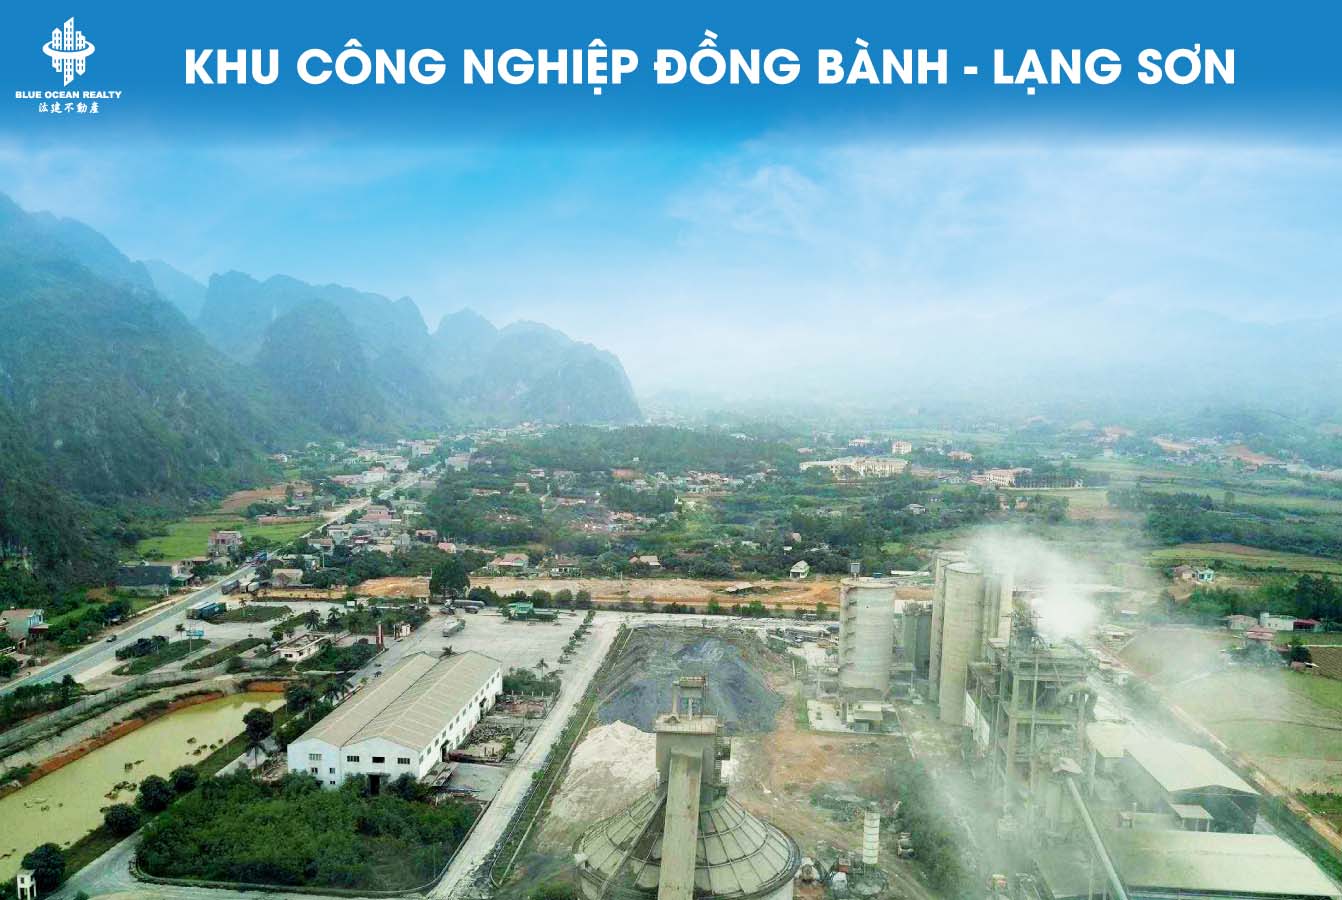 Khu công nghiệp (KCN) Đồng Bành - Lạng Sơn